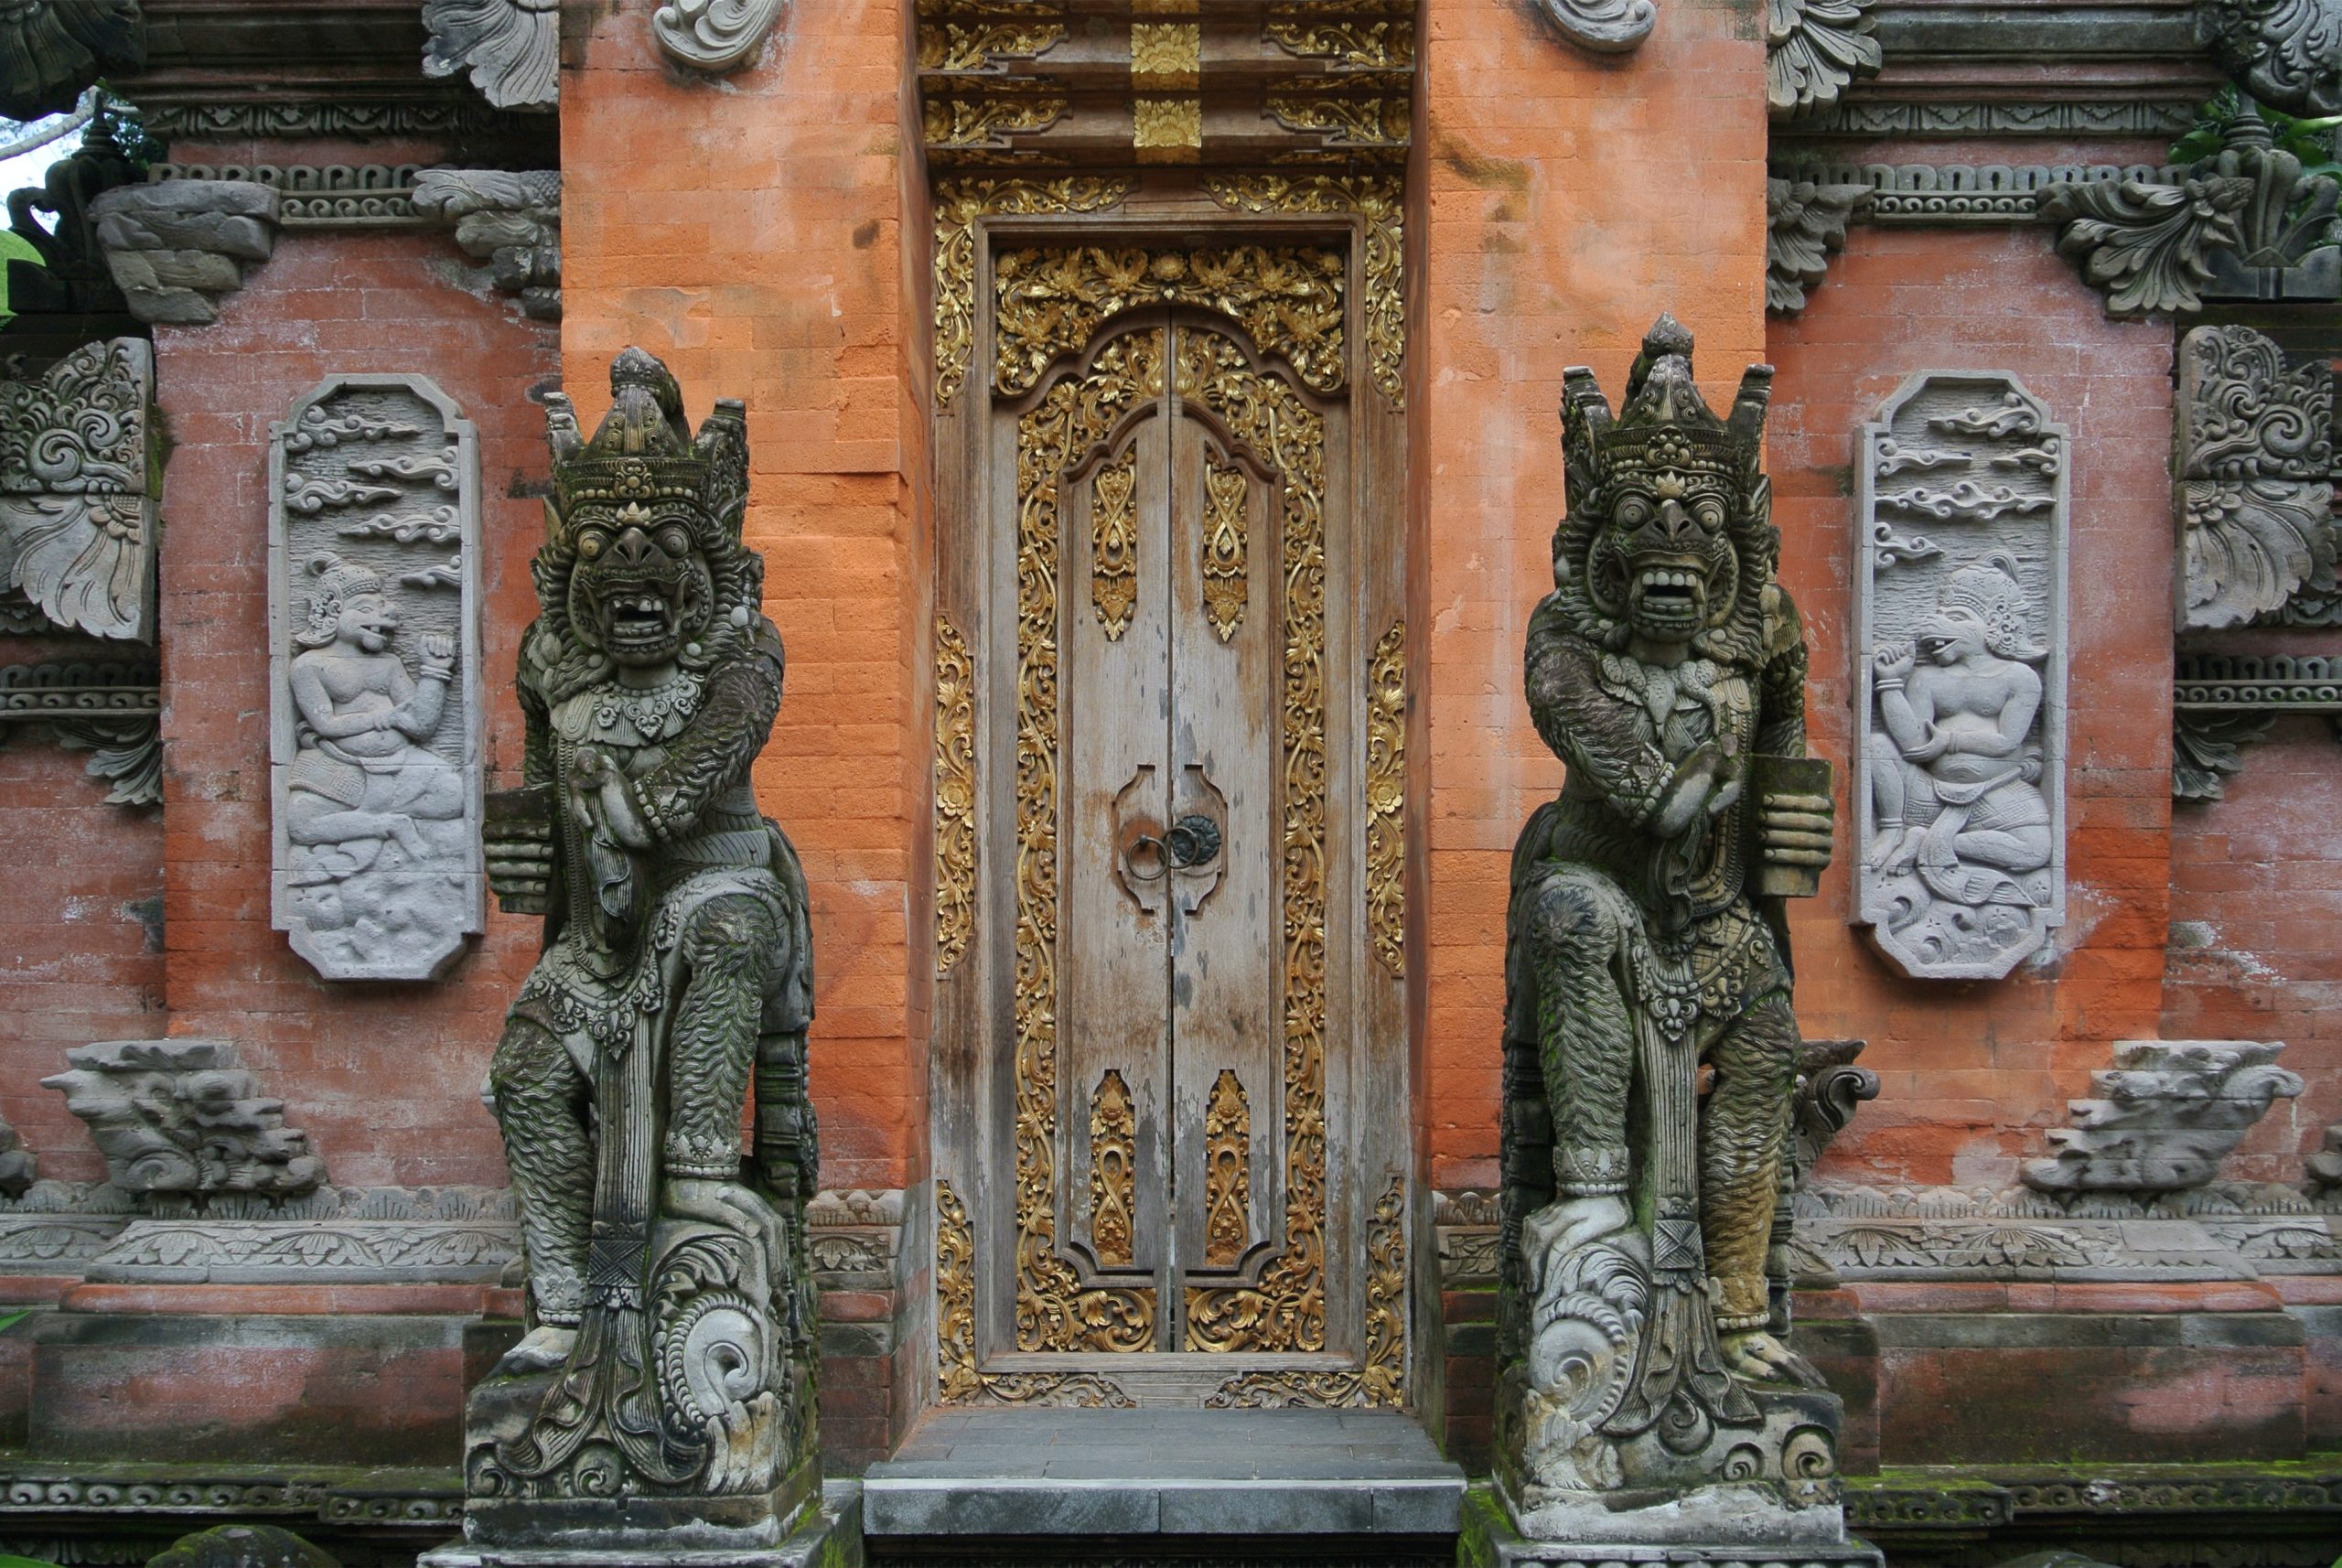 Bali's Unique Architecture and Design Where Culture Meets Creativity